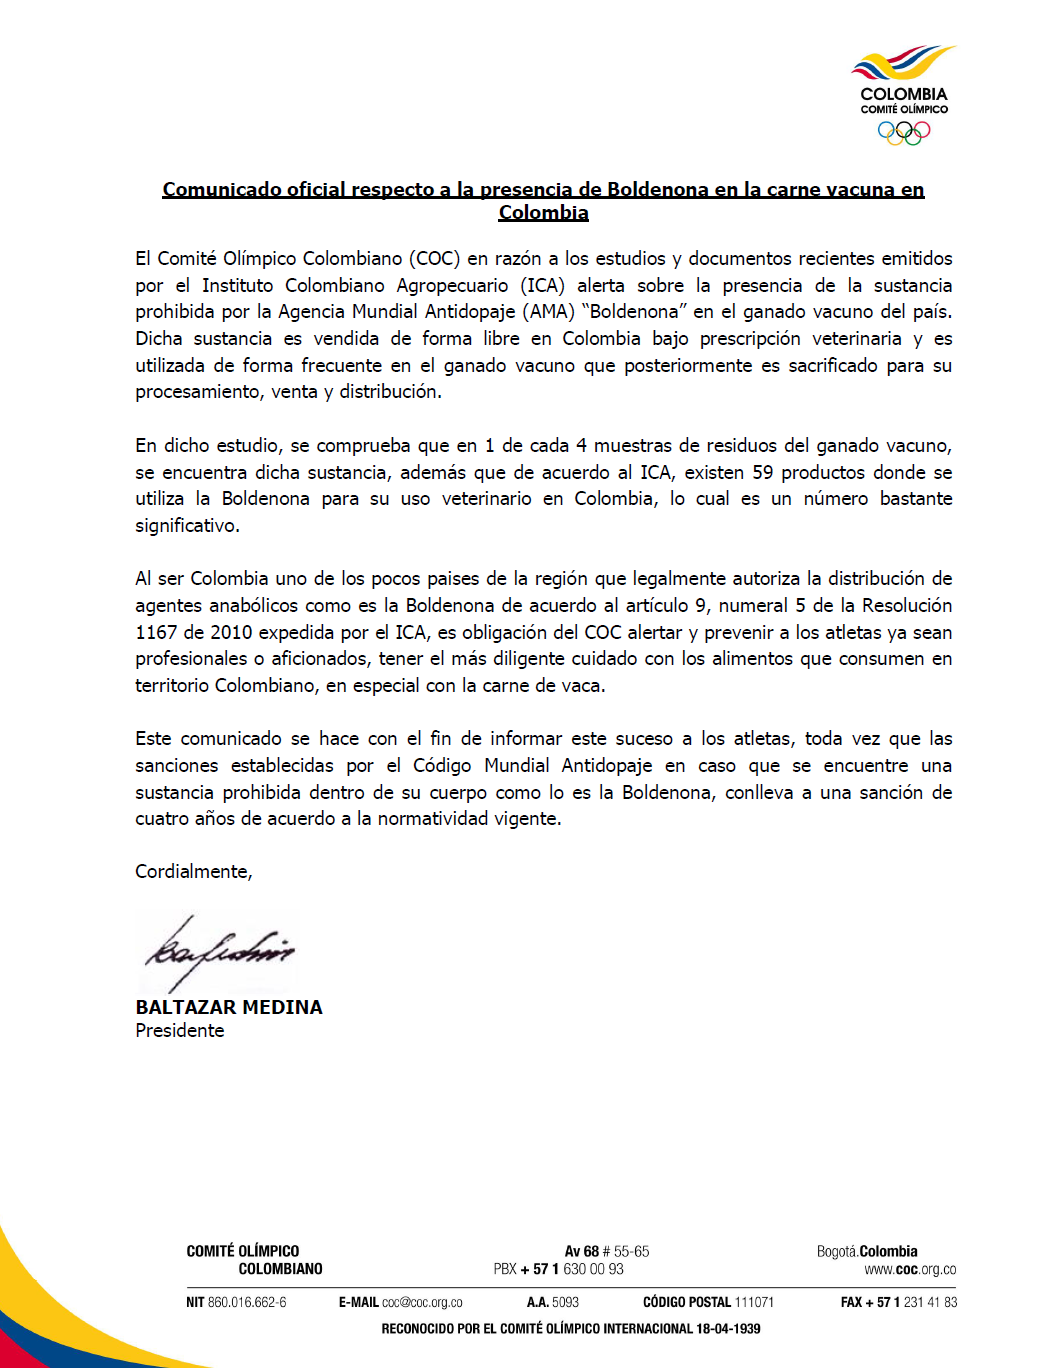 Esta es la carta de Baltasar Medina, presidente del COC, sobre el consumo de carne de res.